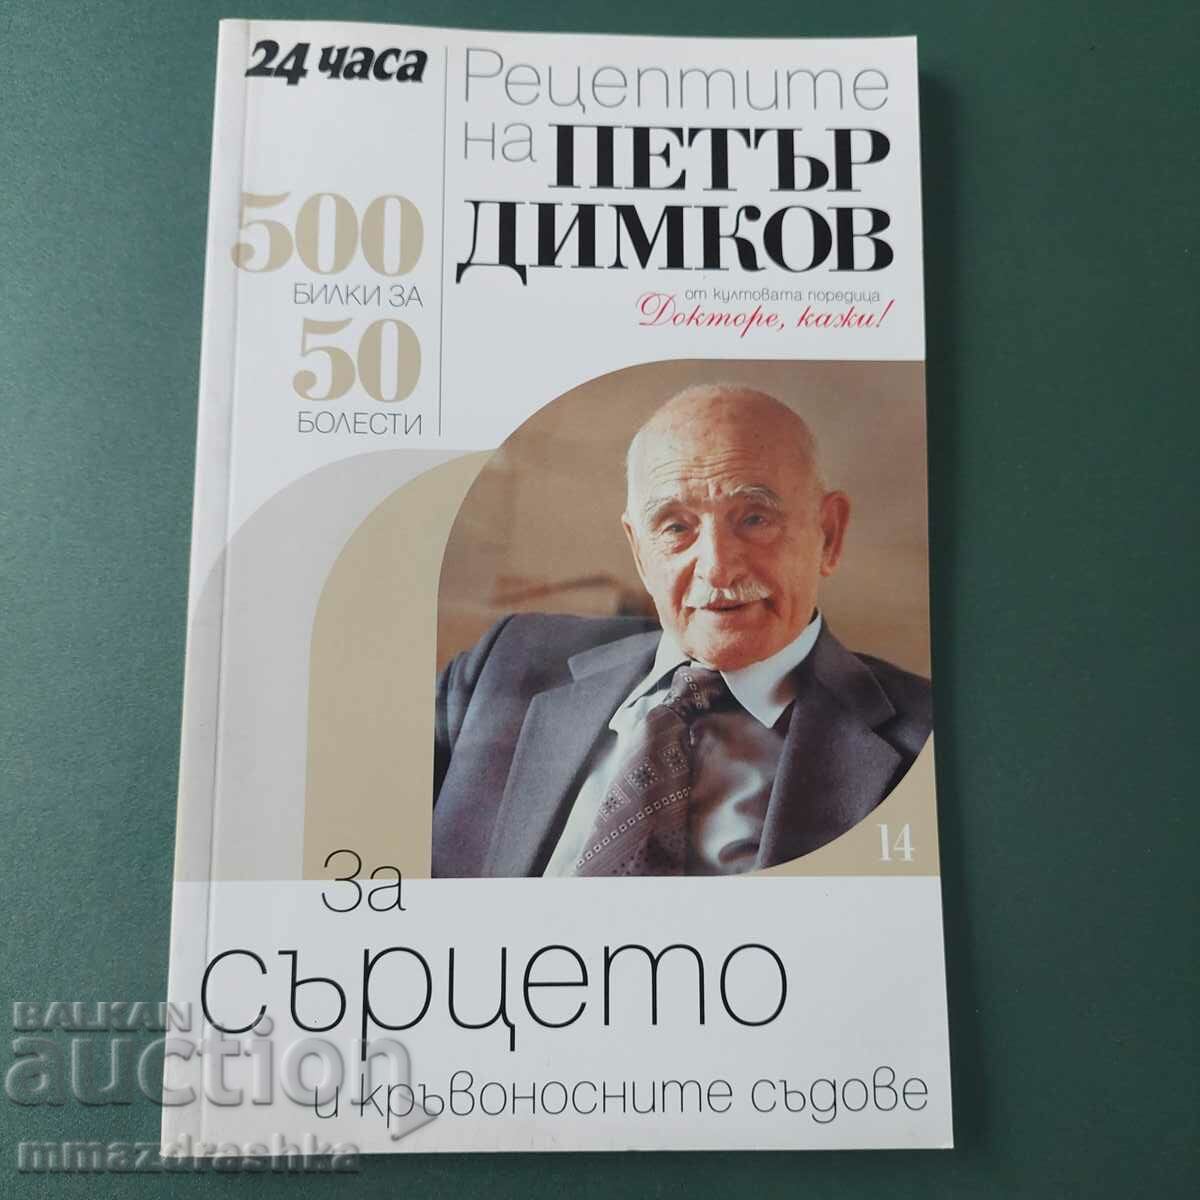 500 рецепти за сърцето, Петър Димков